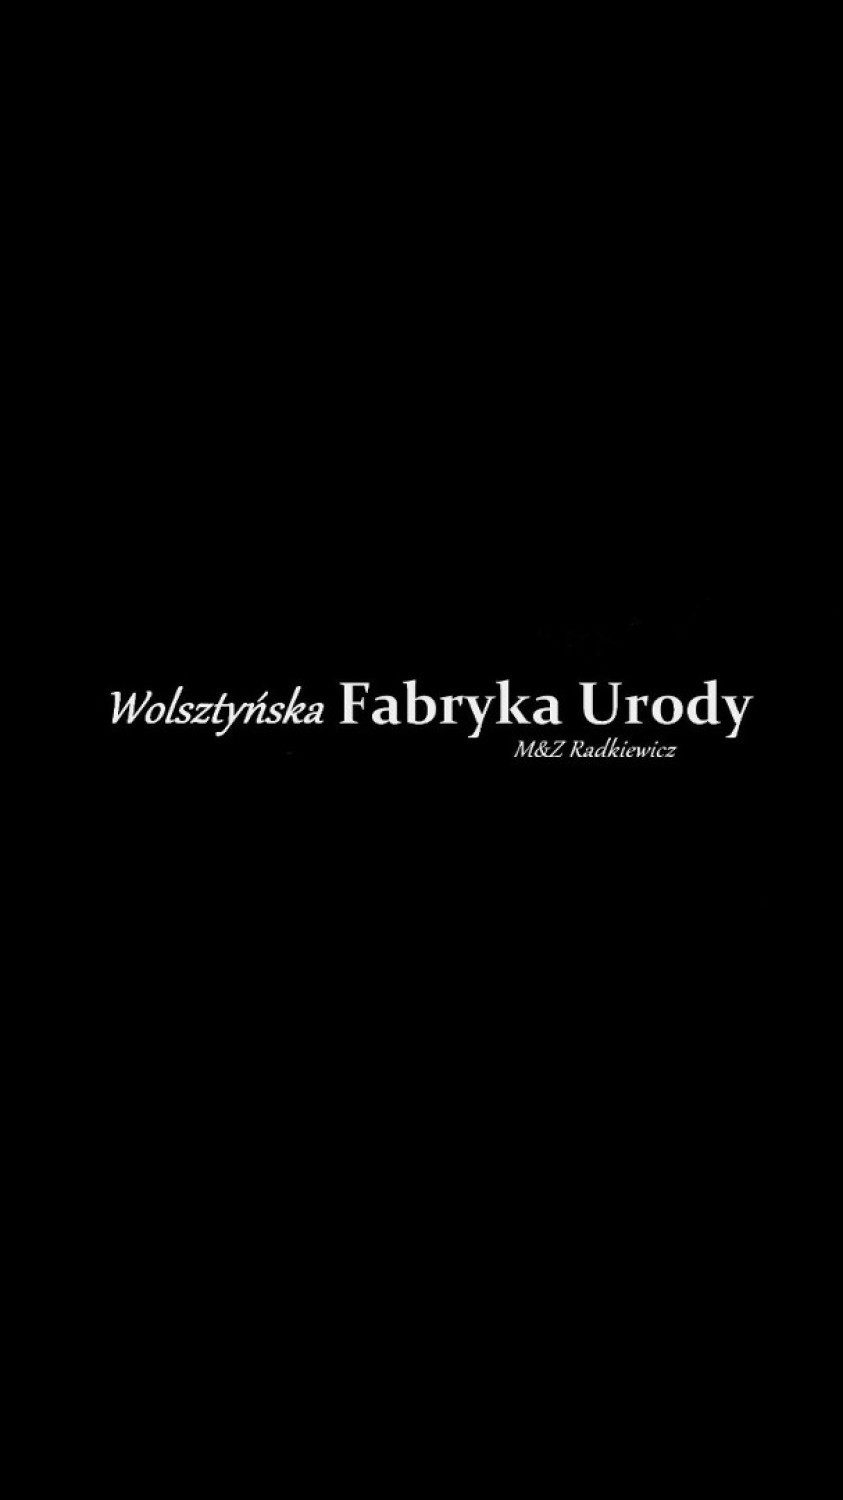 Wolsztyńska Fabryka Urody M&Z Radkiewicz